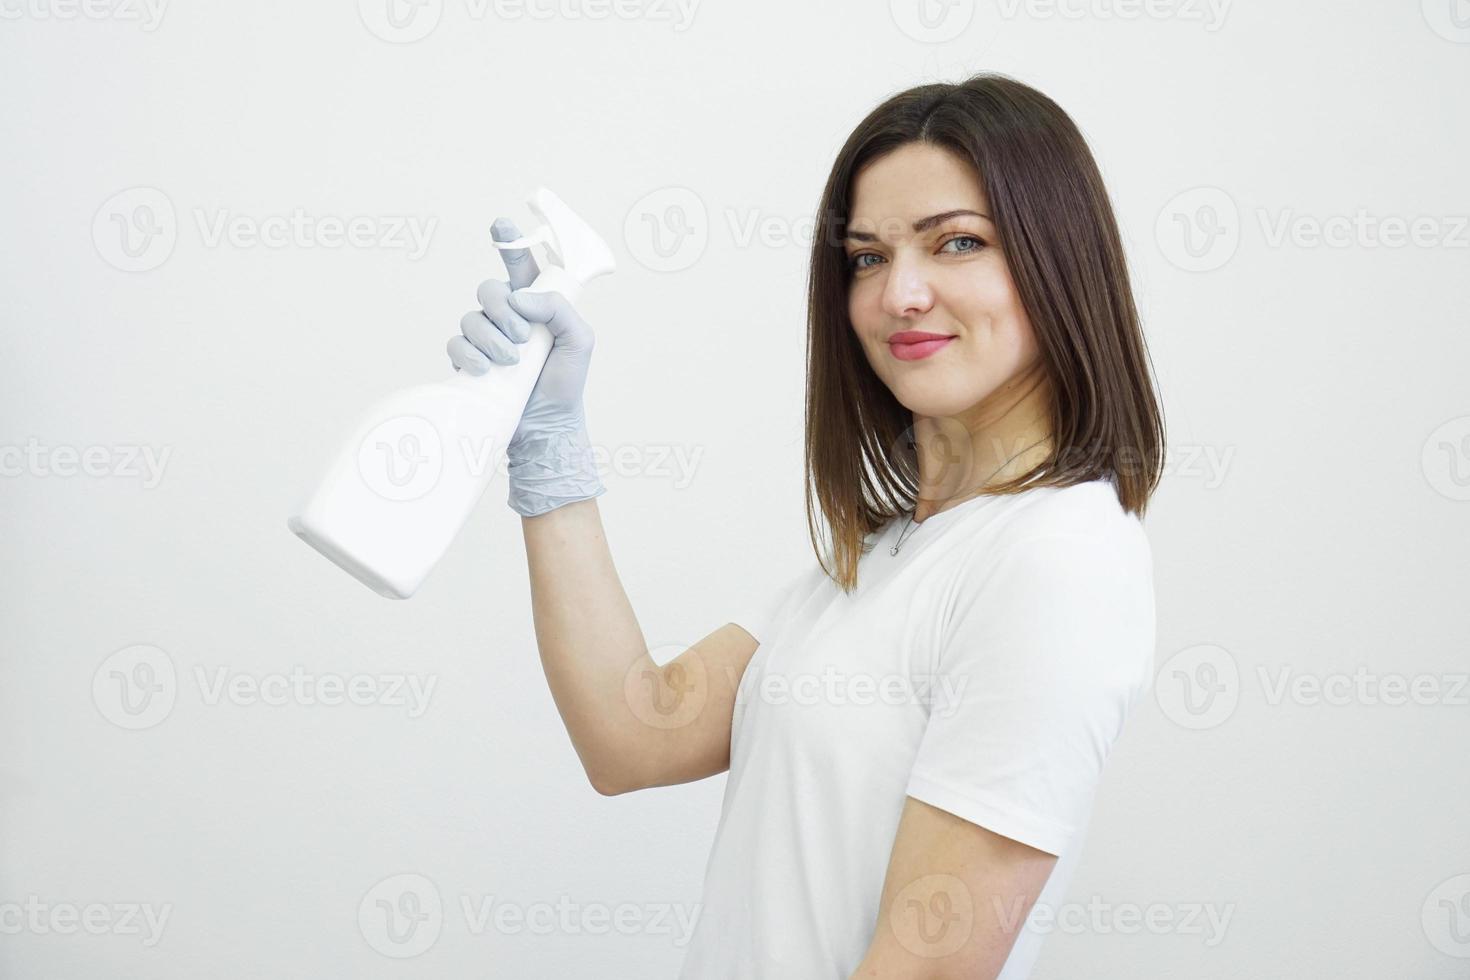 mulher segurando um frasco de spray - anti-séptico ou detergente como armas foto